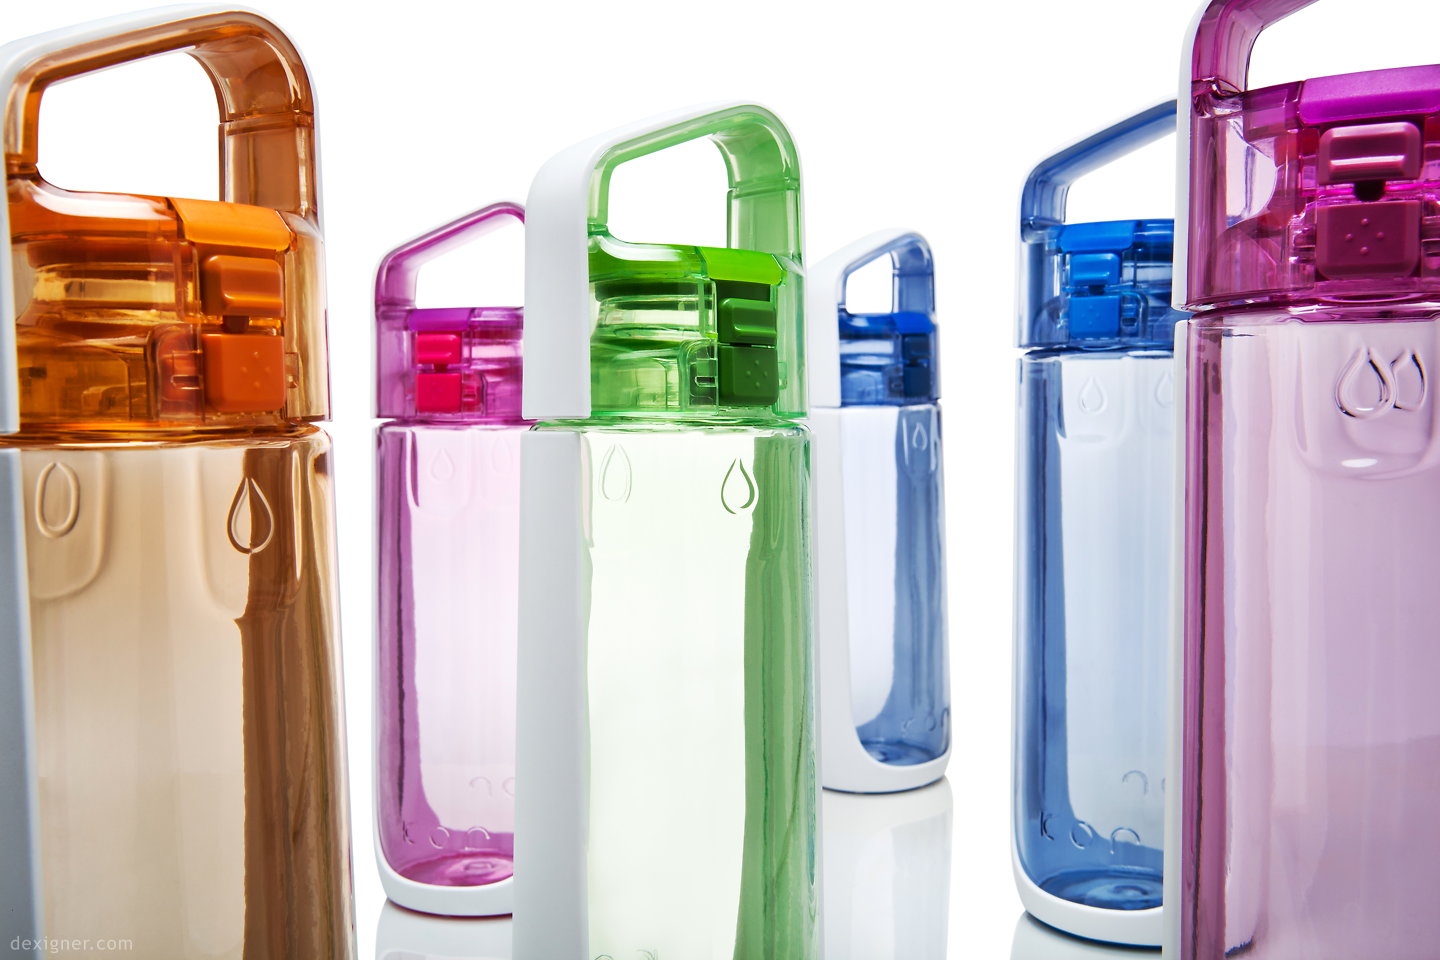 Tradineur - Botella de plástico con asa, garrafa, bidón agua sin BPA, a  prueba de fugas, senderismo, acampada, fitness, gimnasio